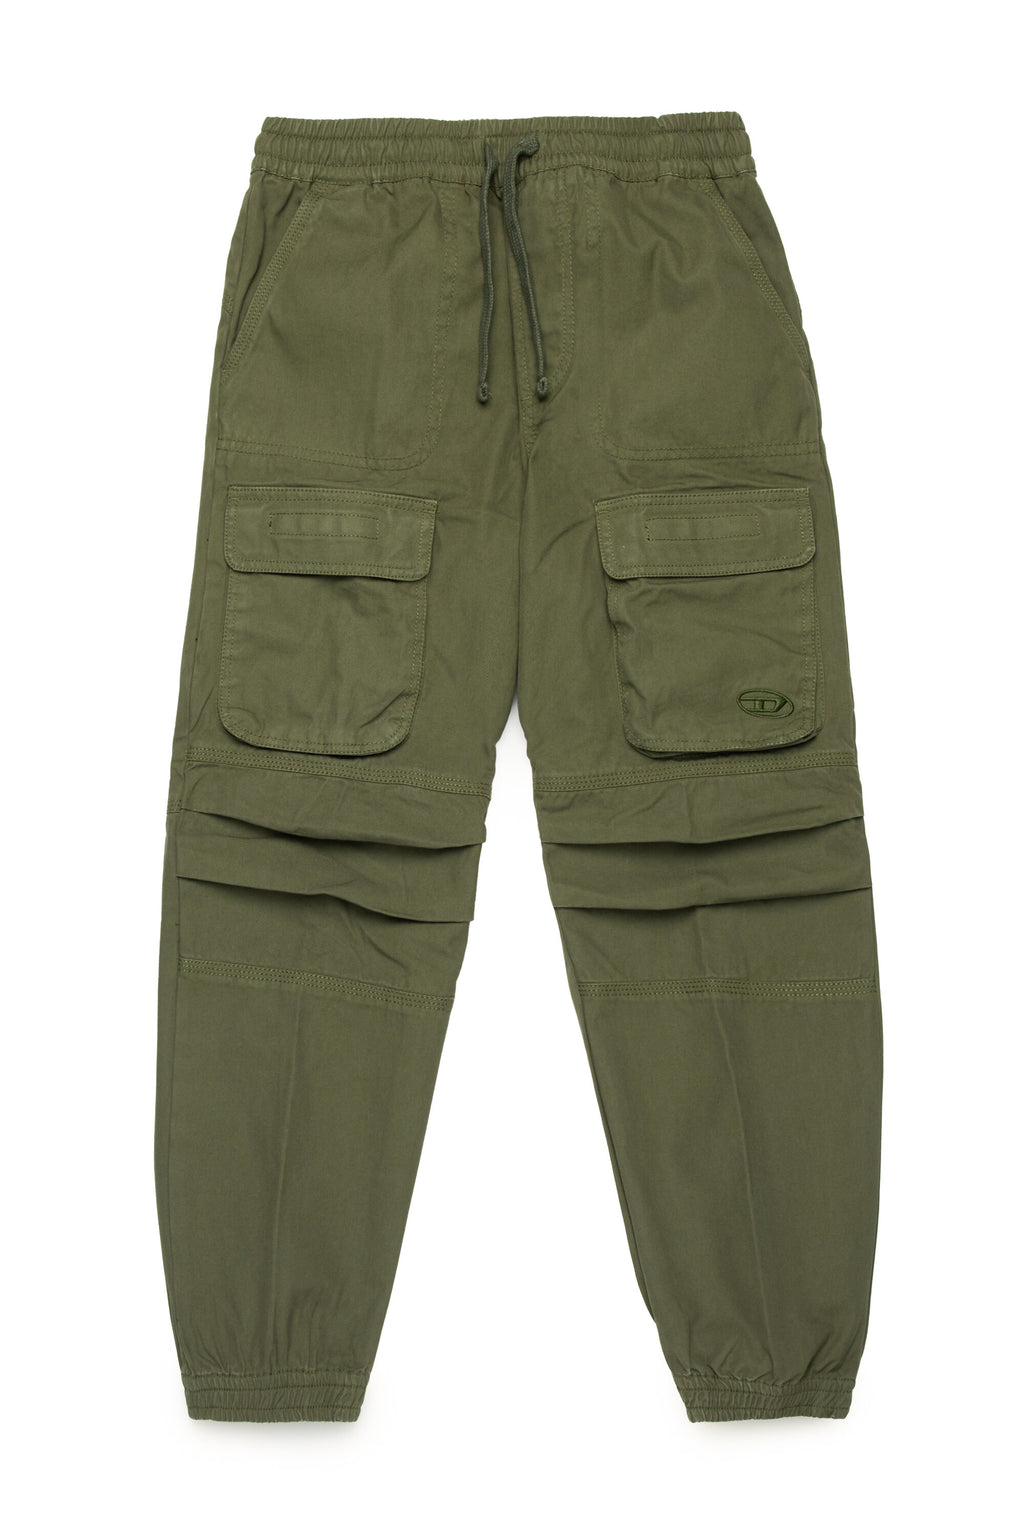 Oval D branded gabardine cargo trousers